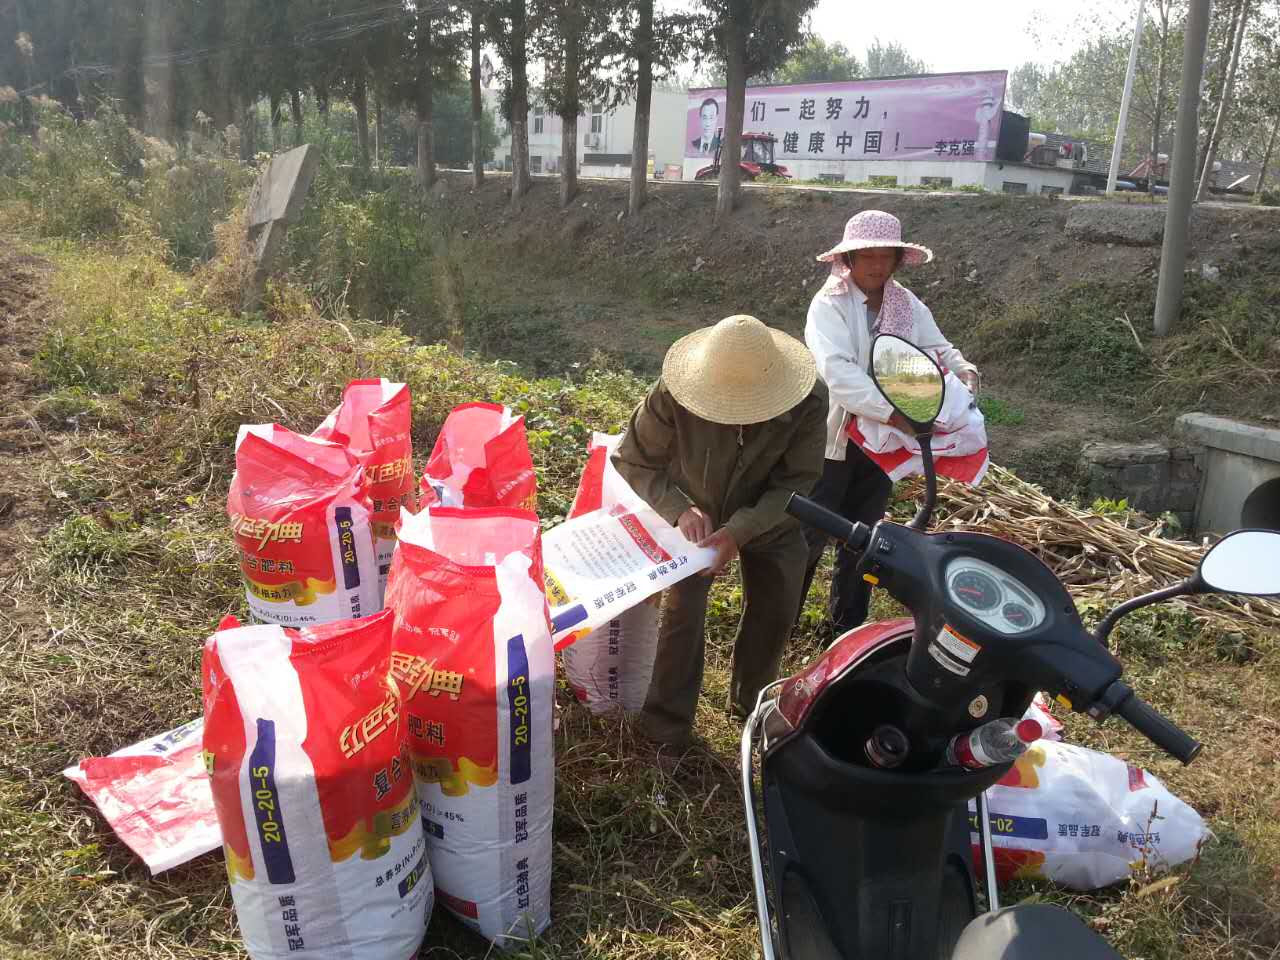 老张和媳妇正在准备秋小麦肥料